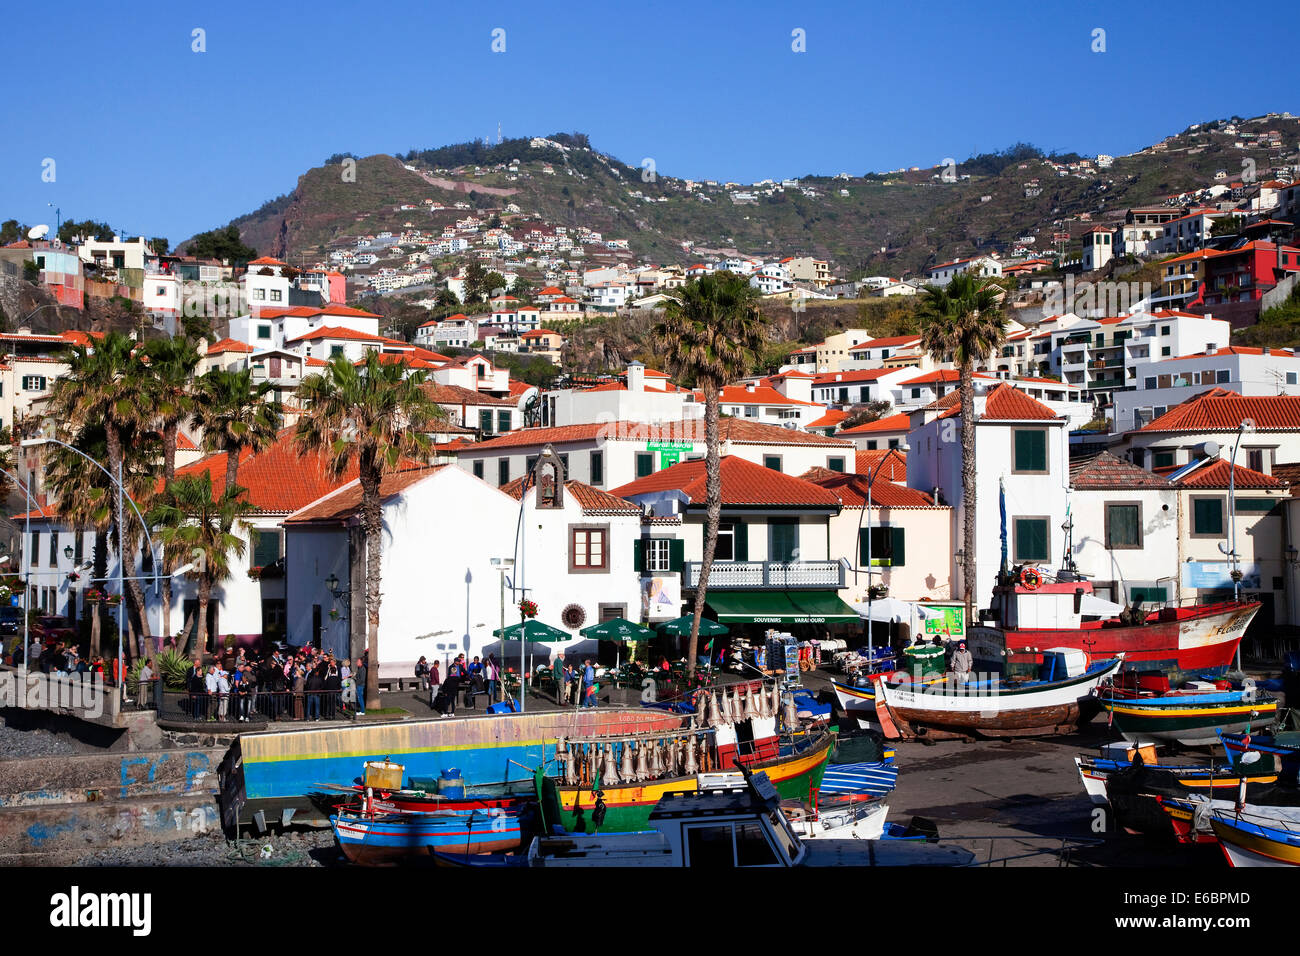 Animada vida turística en el pueblo pesquero de dos Camara de Lobos, Madeira, Portugal Foto de stock